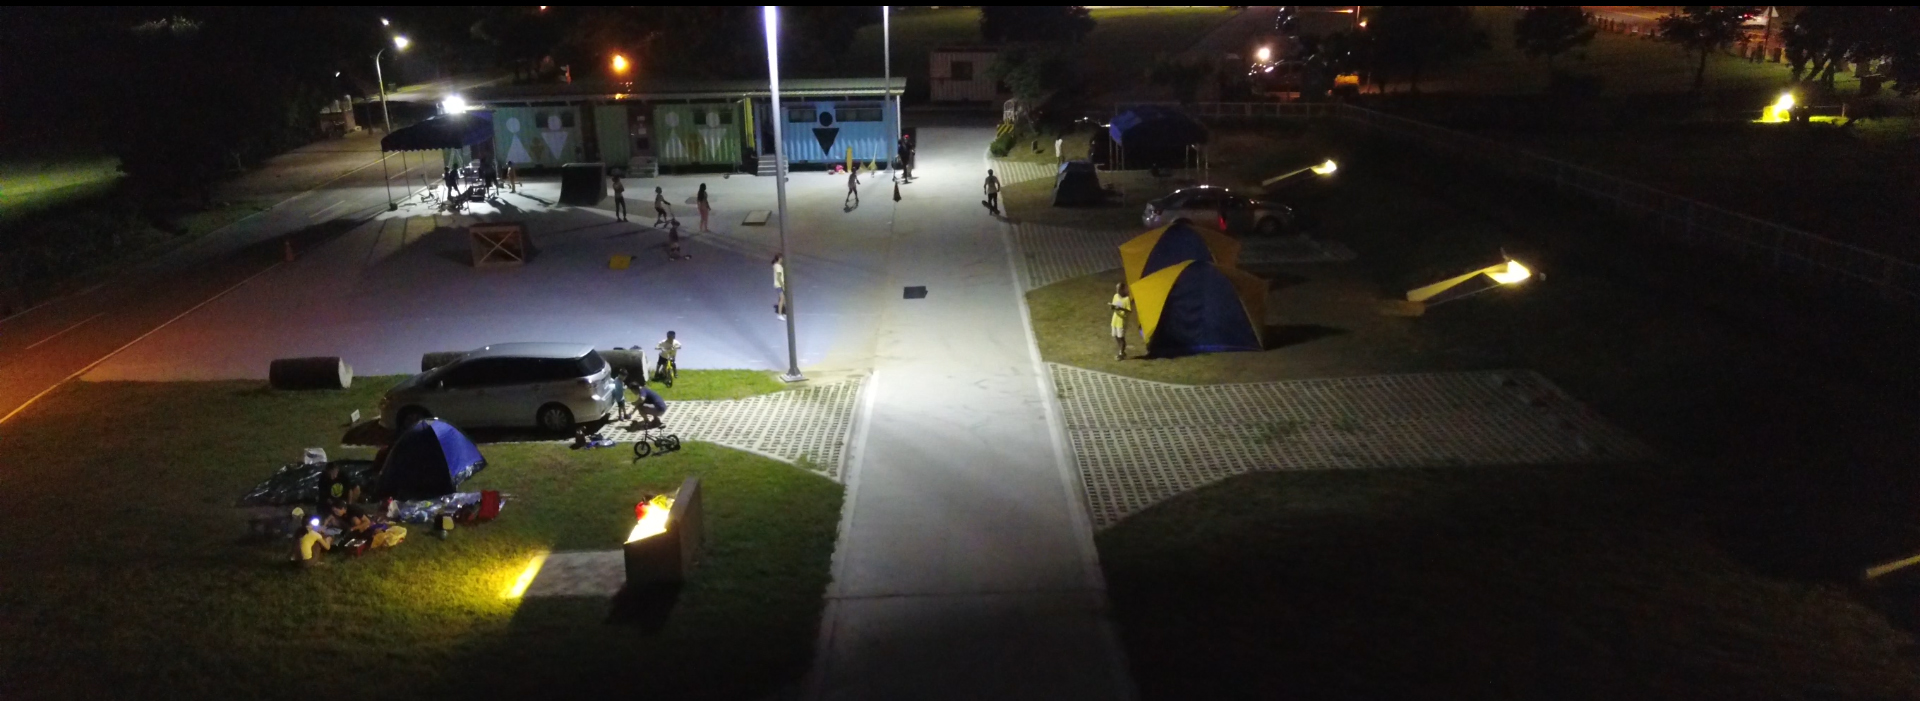 夜間露營